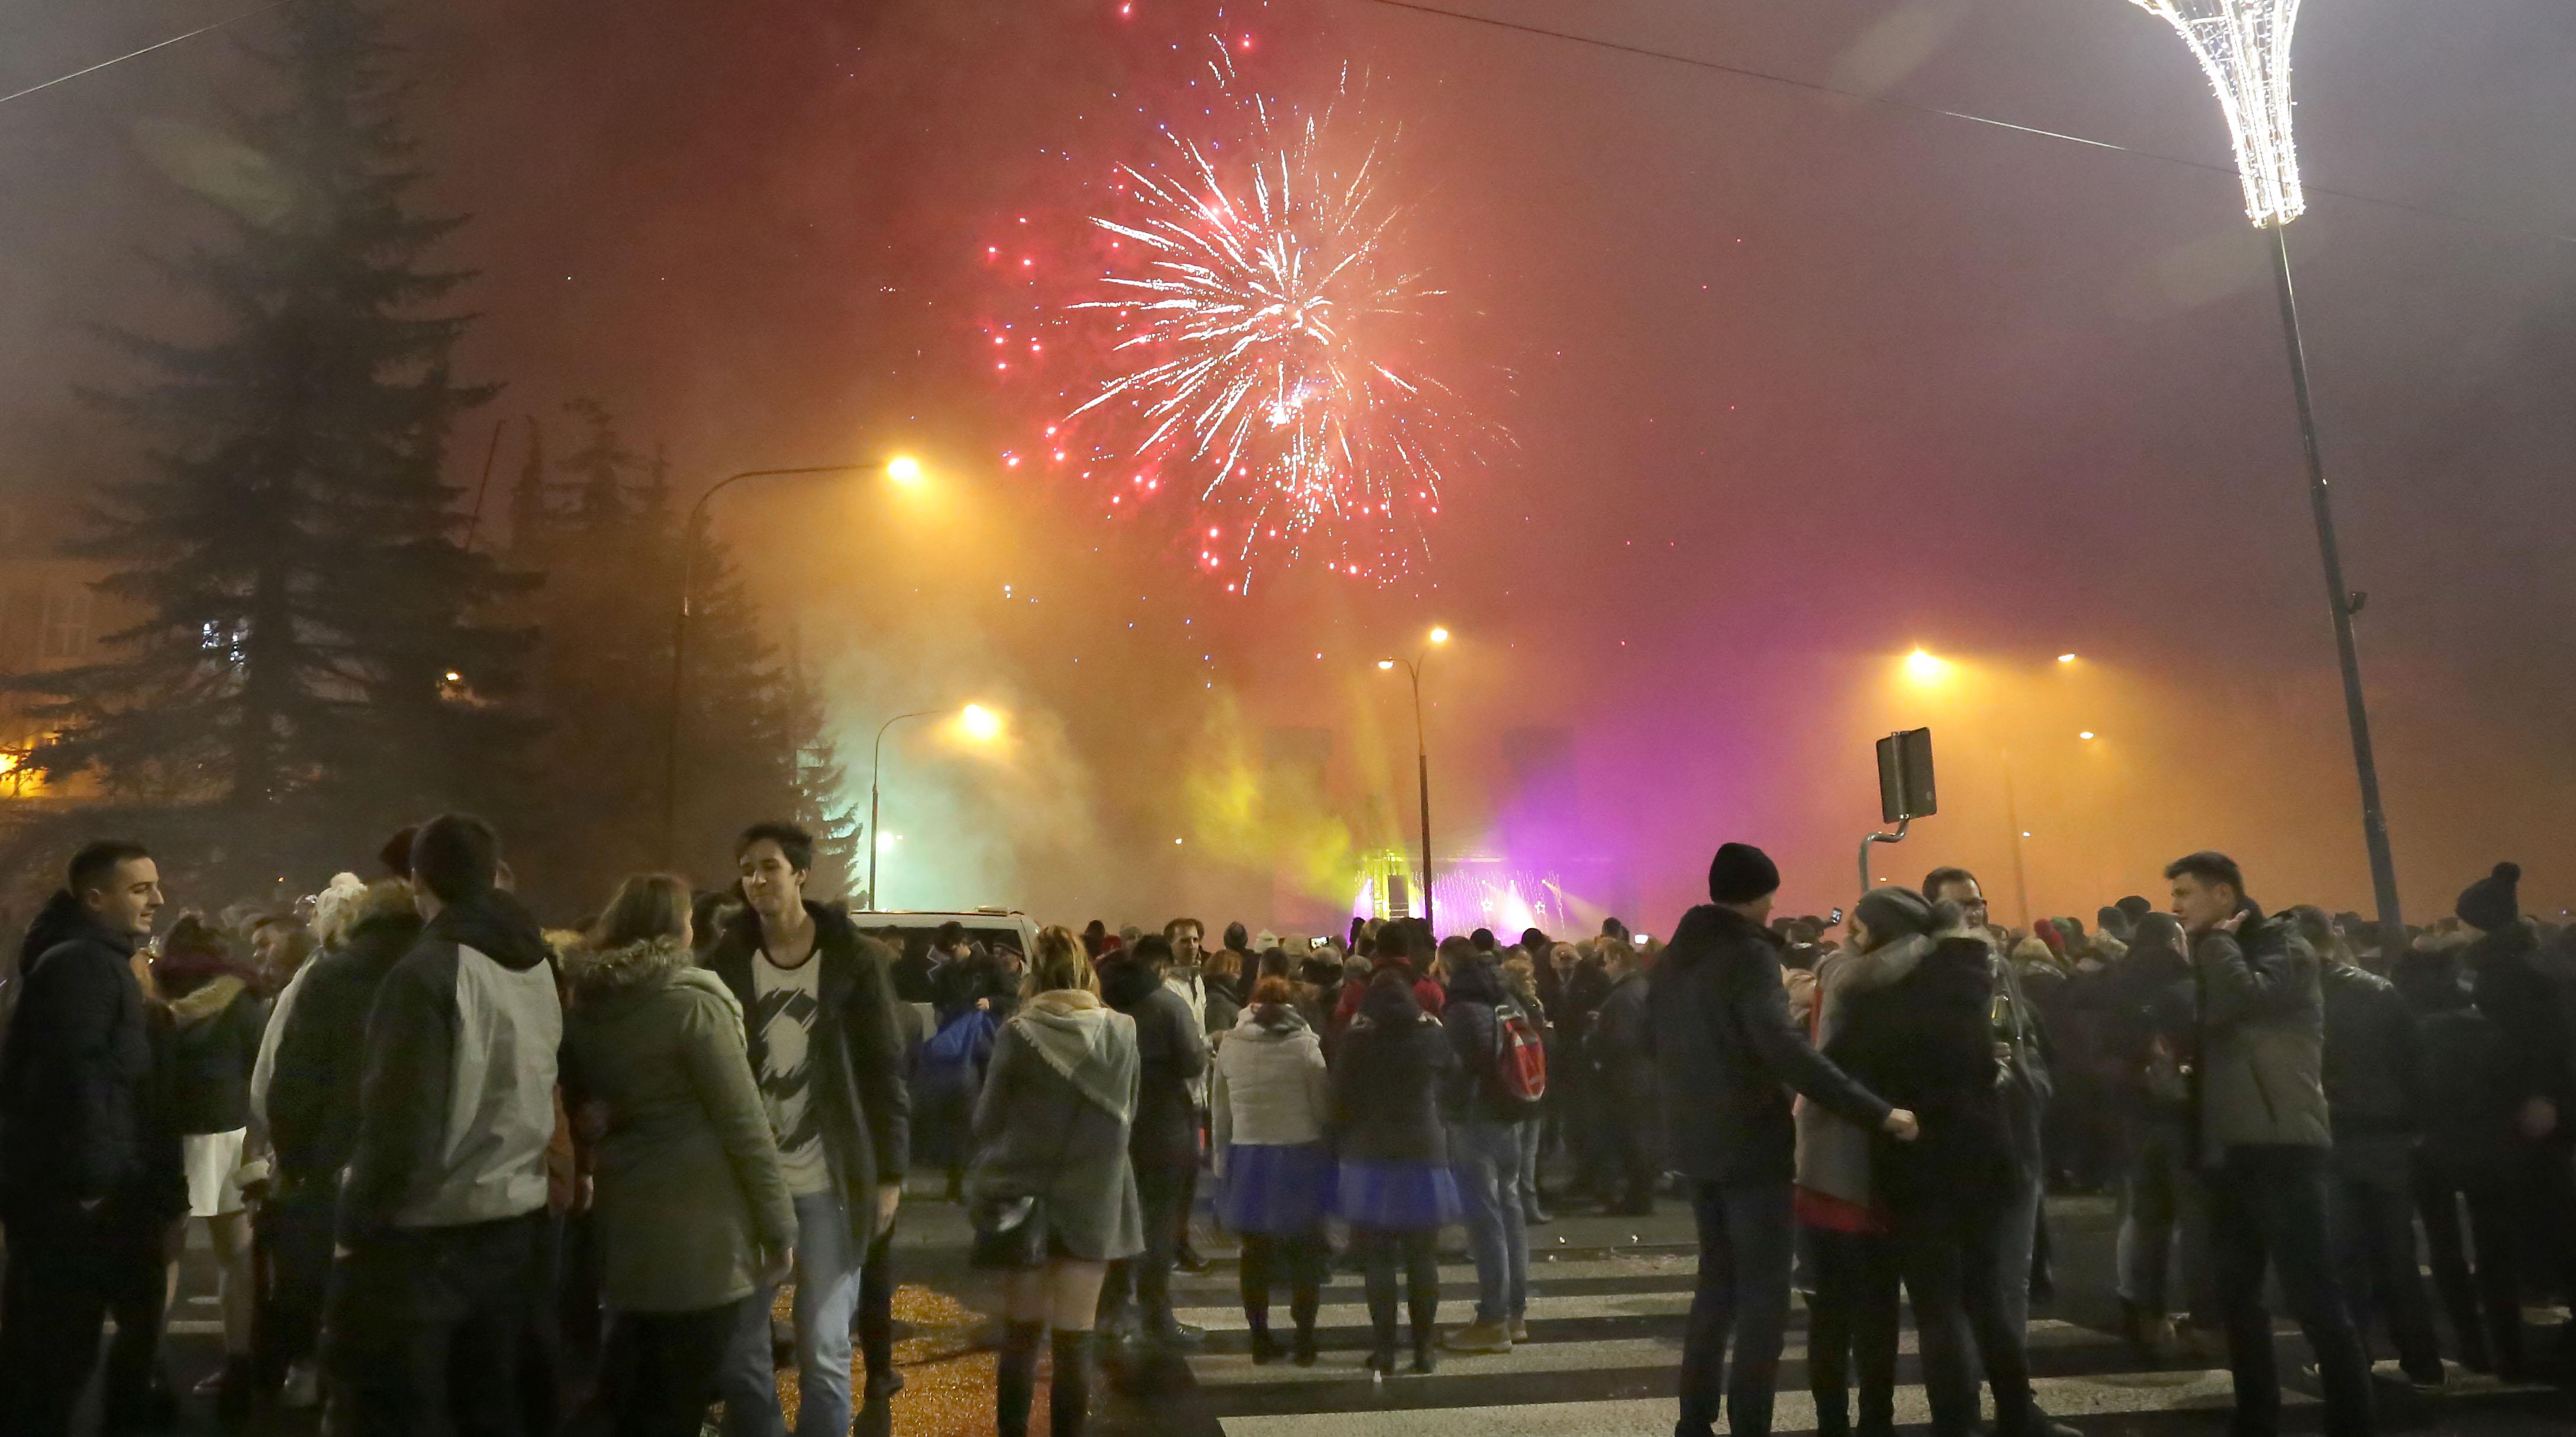 Sylwester 2017-2018

Olsztyn-przywitanie Nowego Roku w mieście, koncert,pokaz sztucznych ogni.